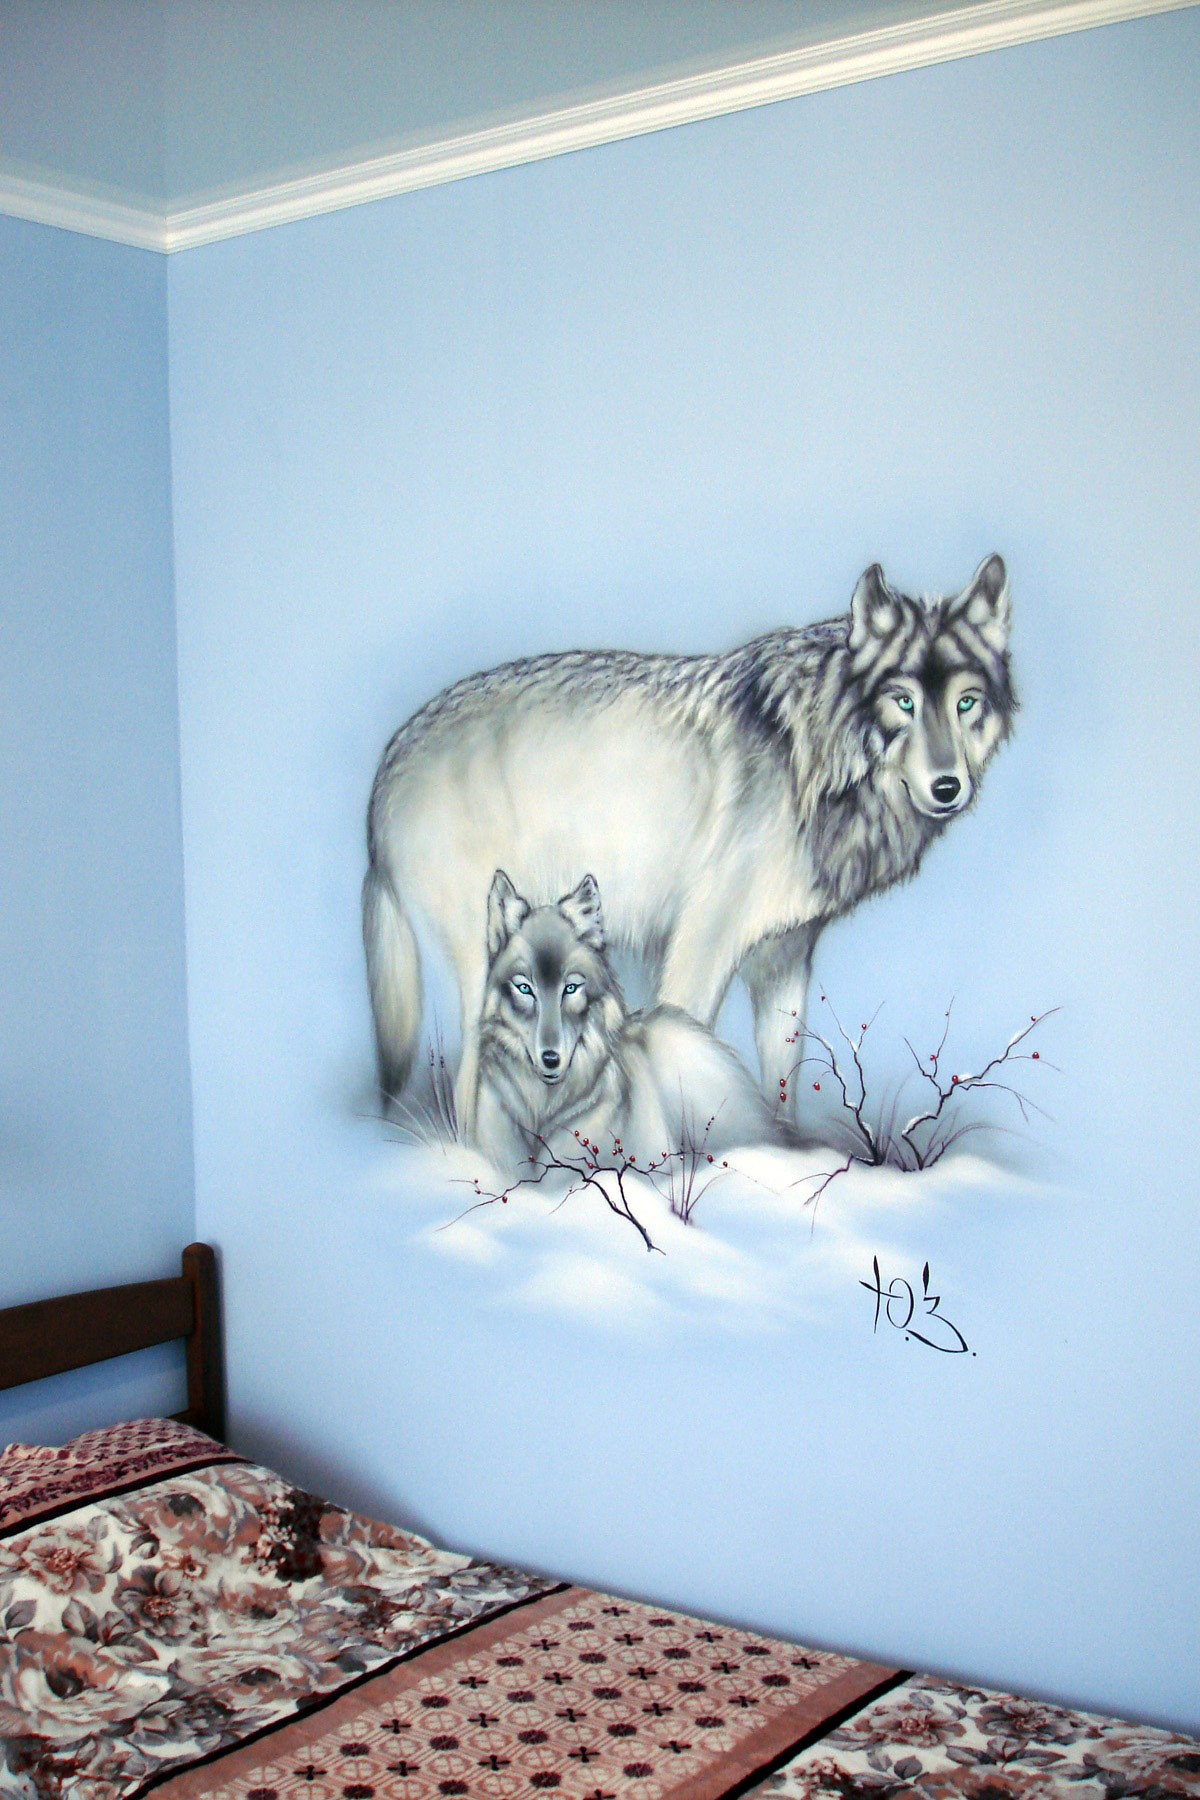 Рисование на стене в квартире